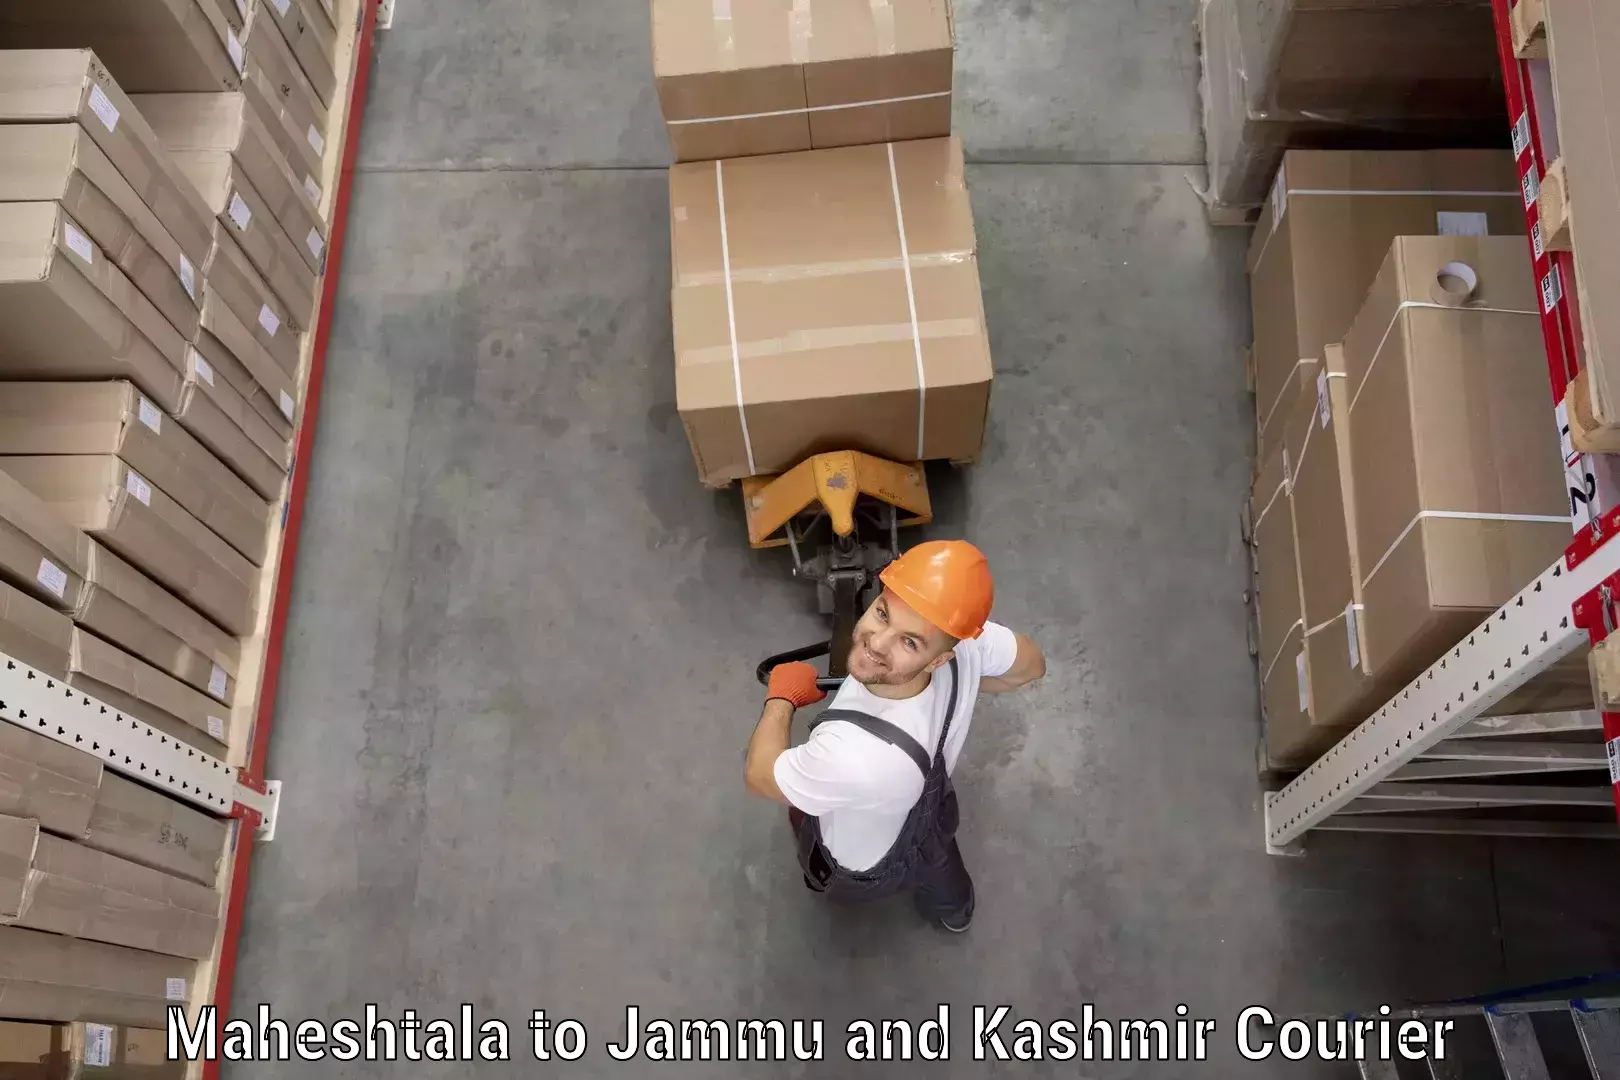 Professional courier handling Maheshtala to Leh